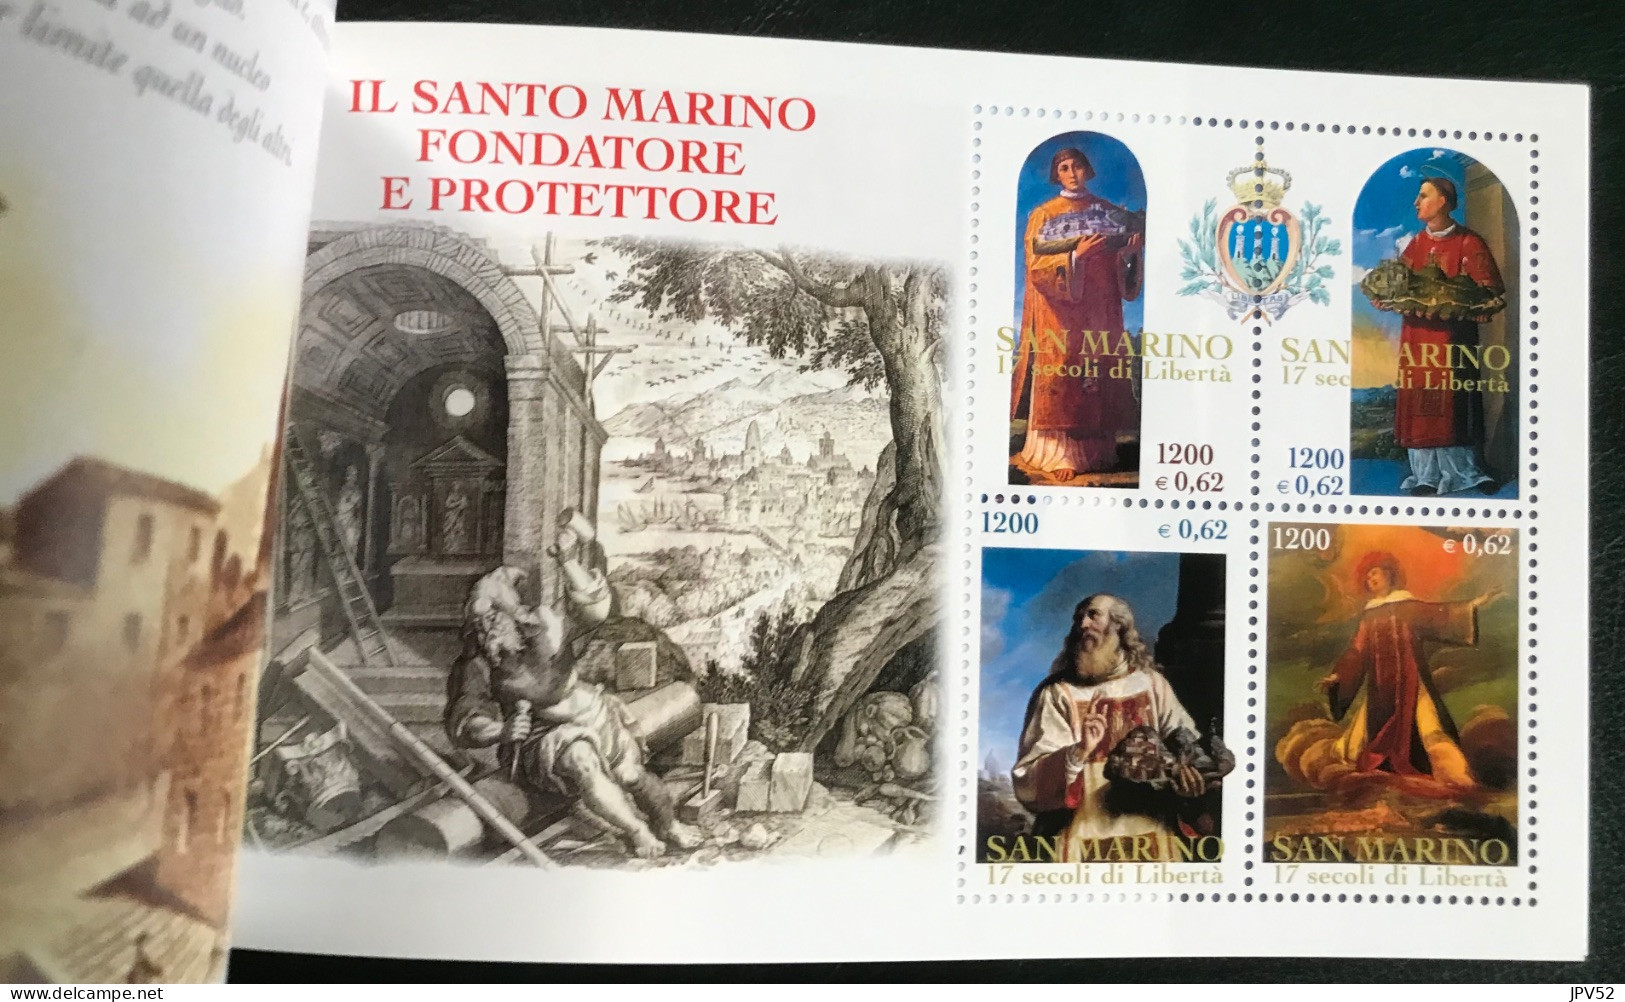 San Marino - VEL1/25 - 2000 - MNH - Michel MH 6 - 1700j Repubblica Di San Marino - Markenheftchen